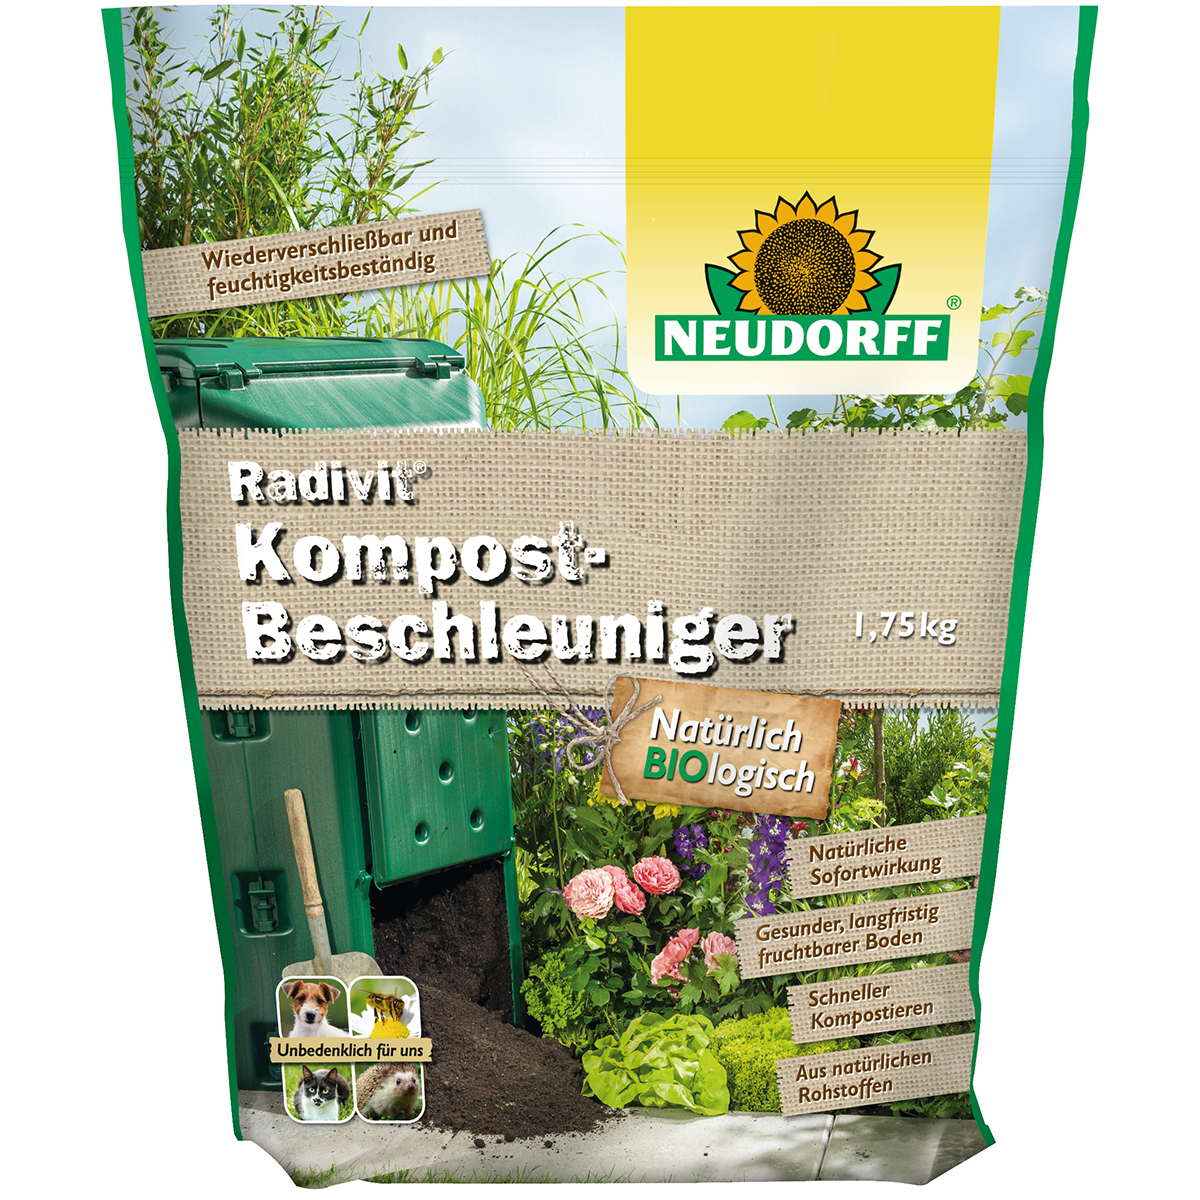 Neudorff Radivit Kompost-Beschleuniger, 1.75 kg